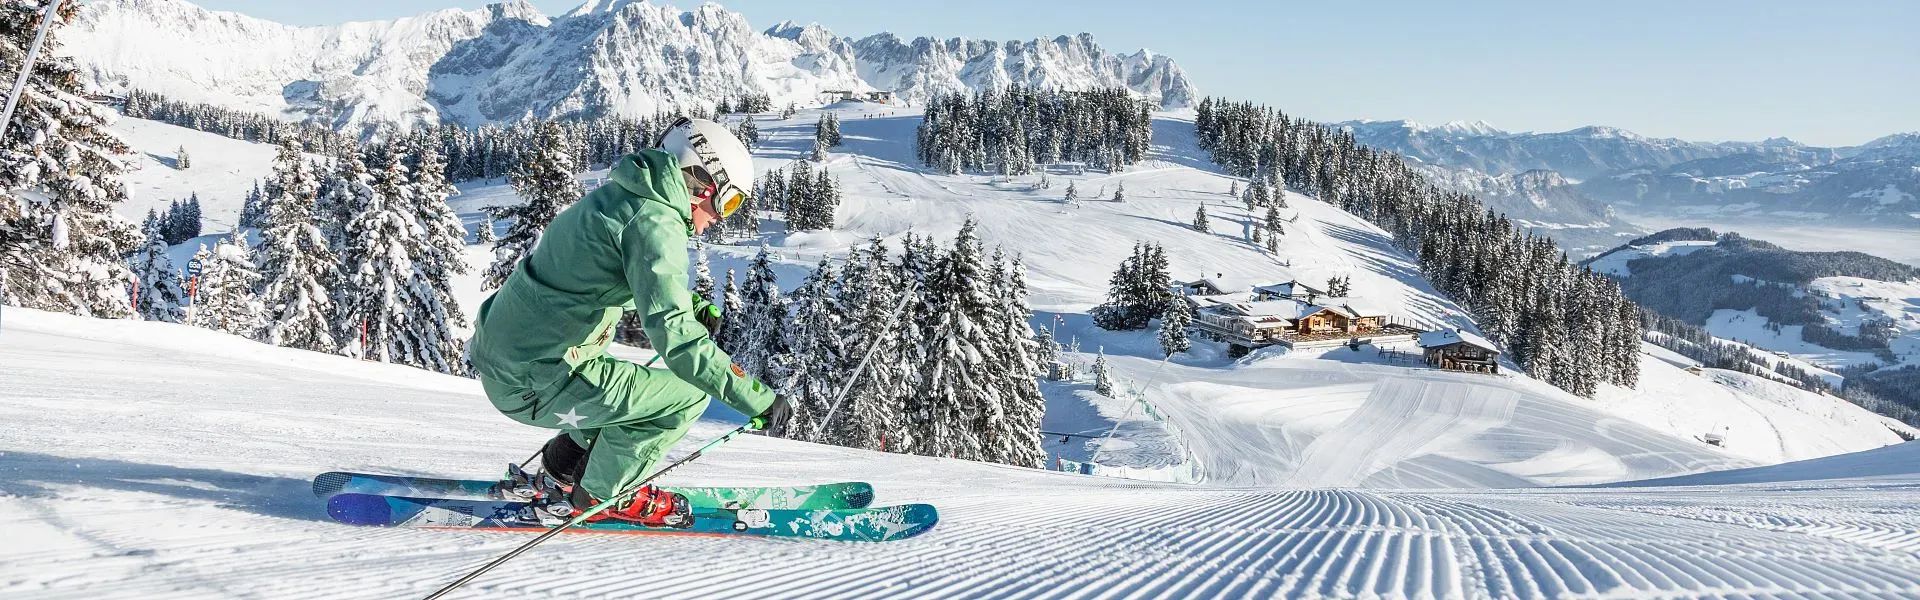 Unter besten Bedingungen skifahren